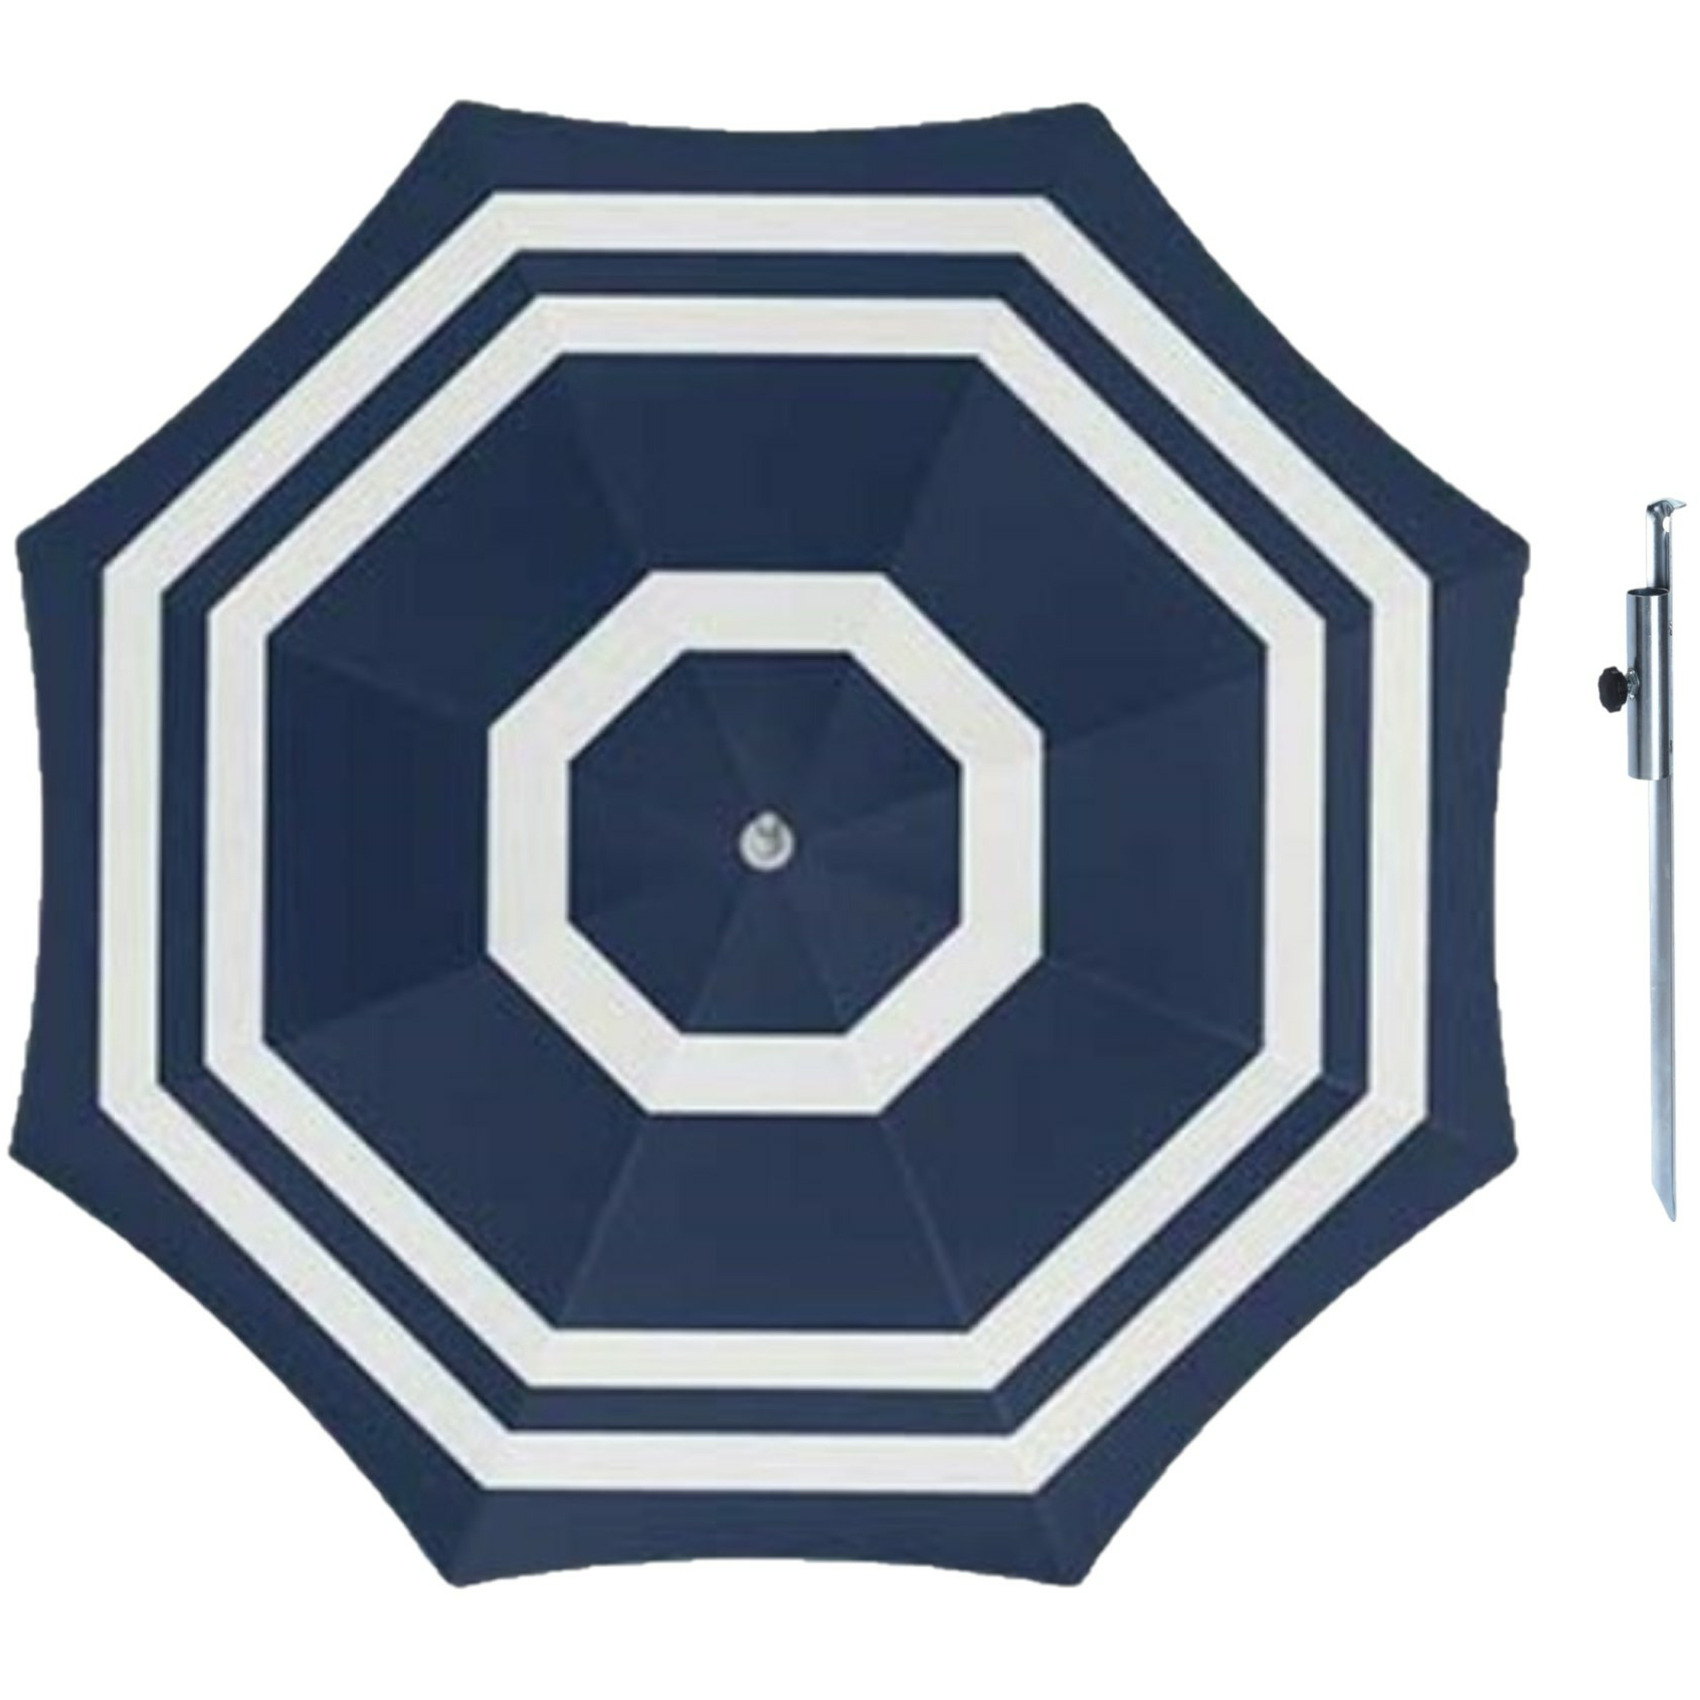 Parasol blauw-wit D160 cm incl. draagtas parasolharing 49 cm